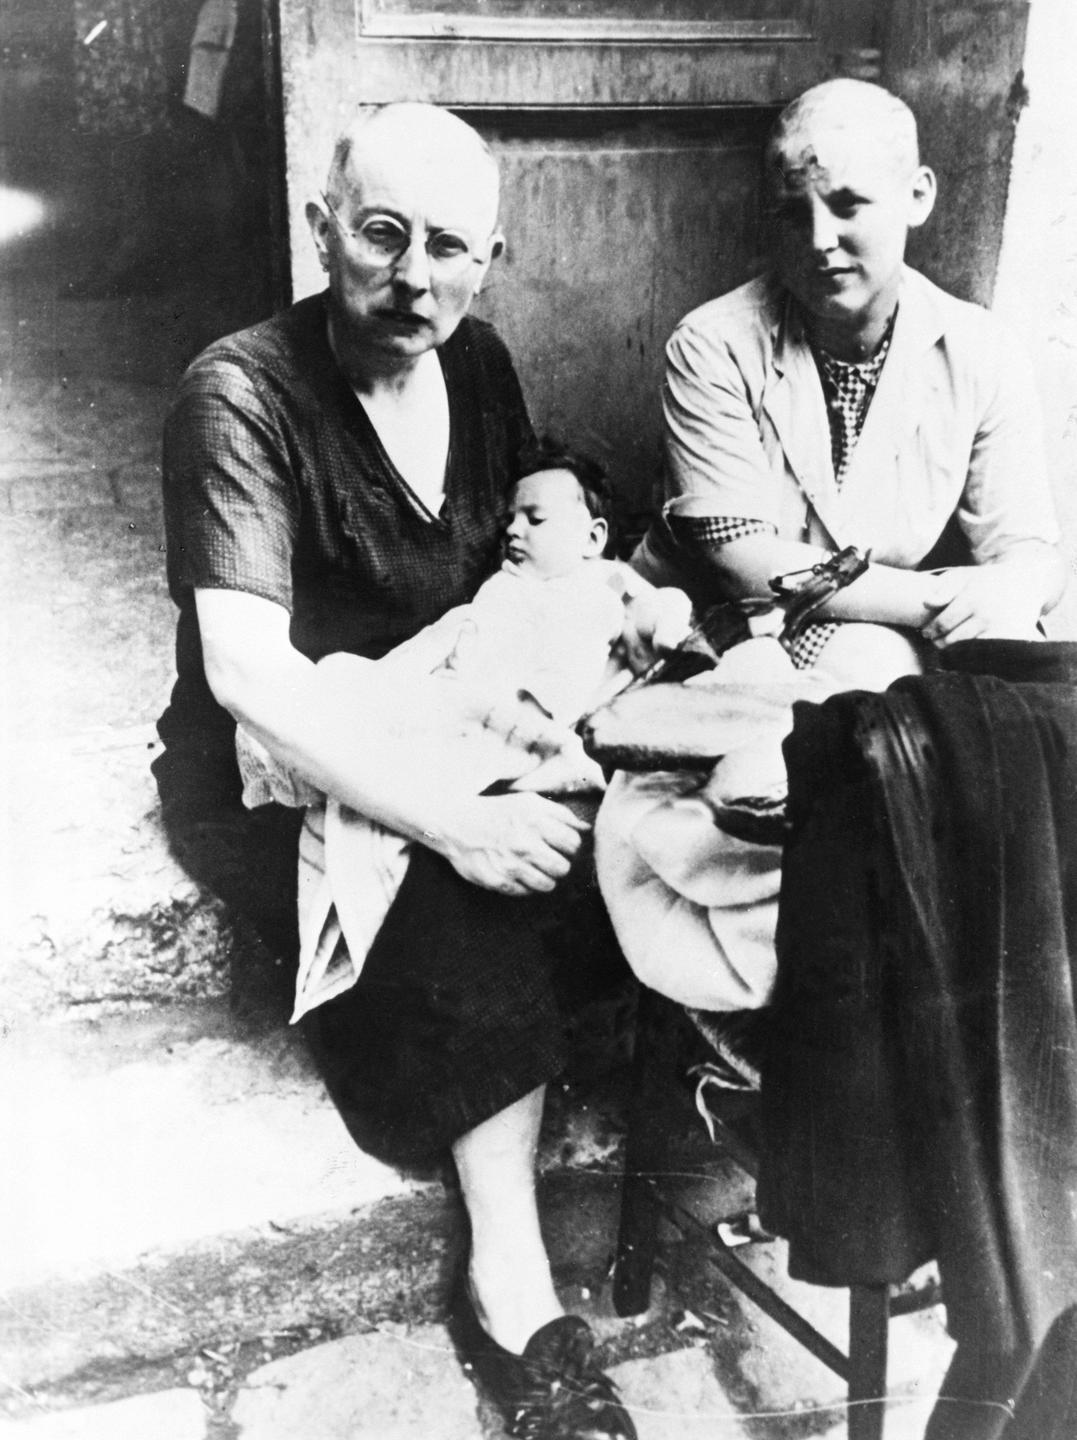 Die Schwarz-weiß-Aufnahme von 1944 zeigt zwei Frauen mit kahlgeschorenem Kopf, von denen eine einen Säugling in den Armen hält.